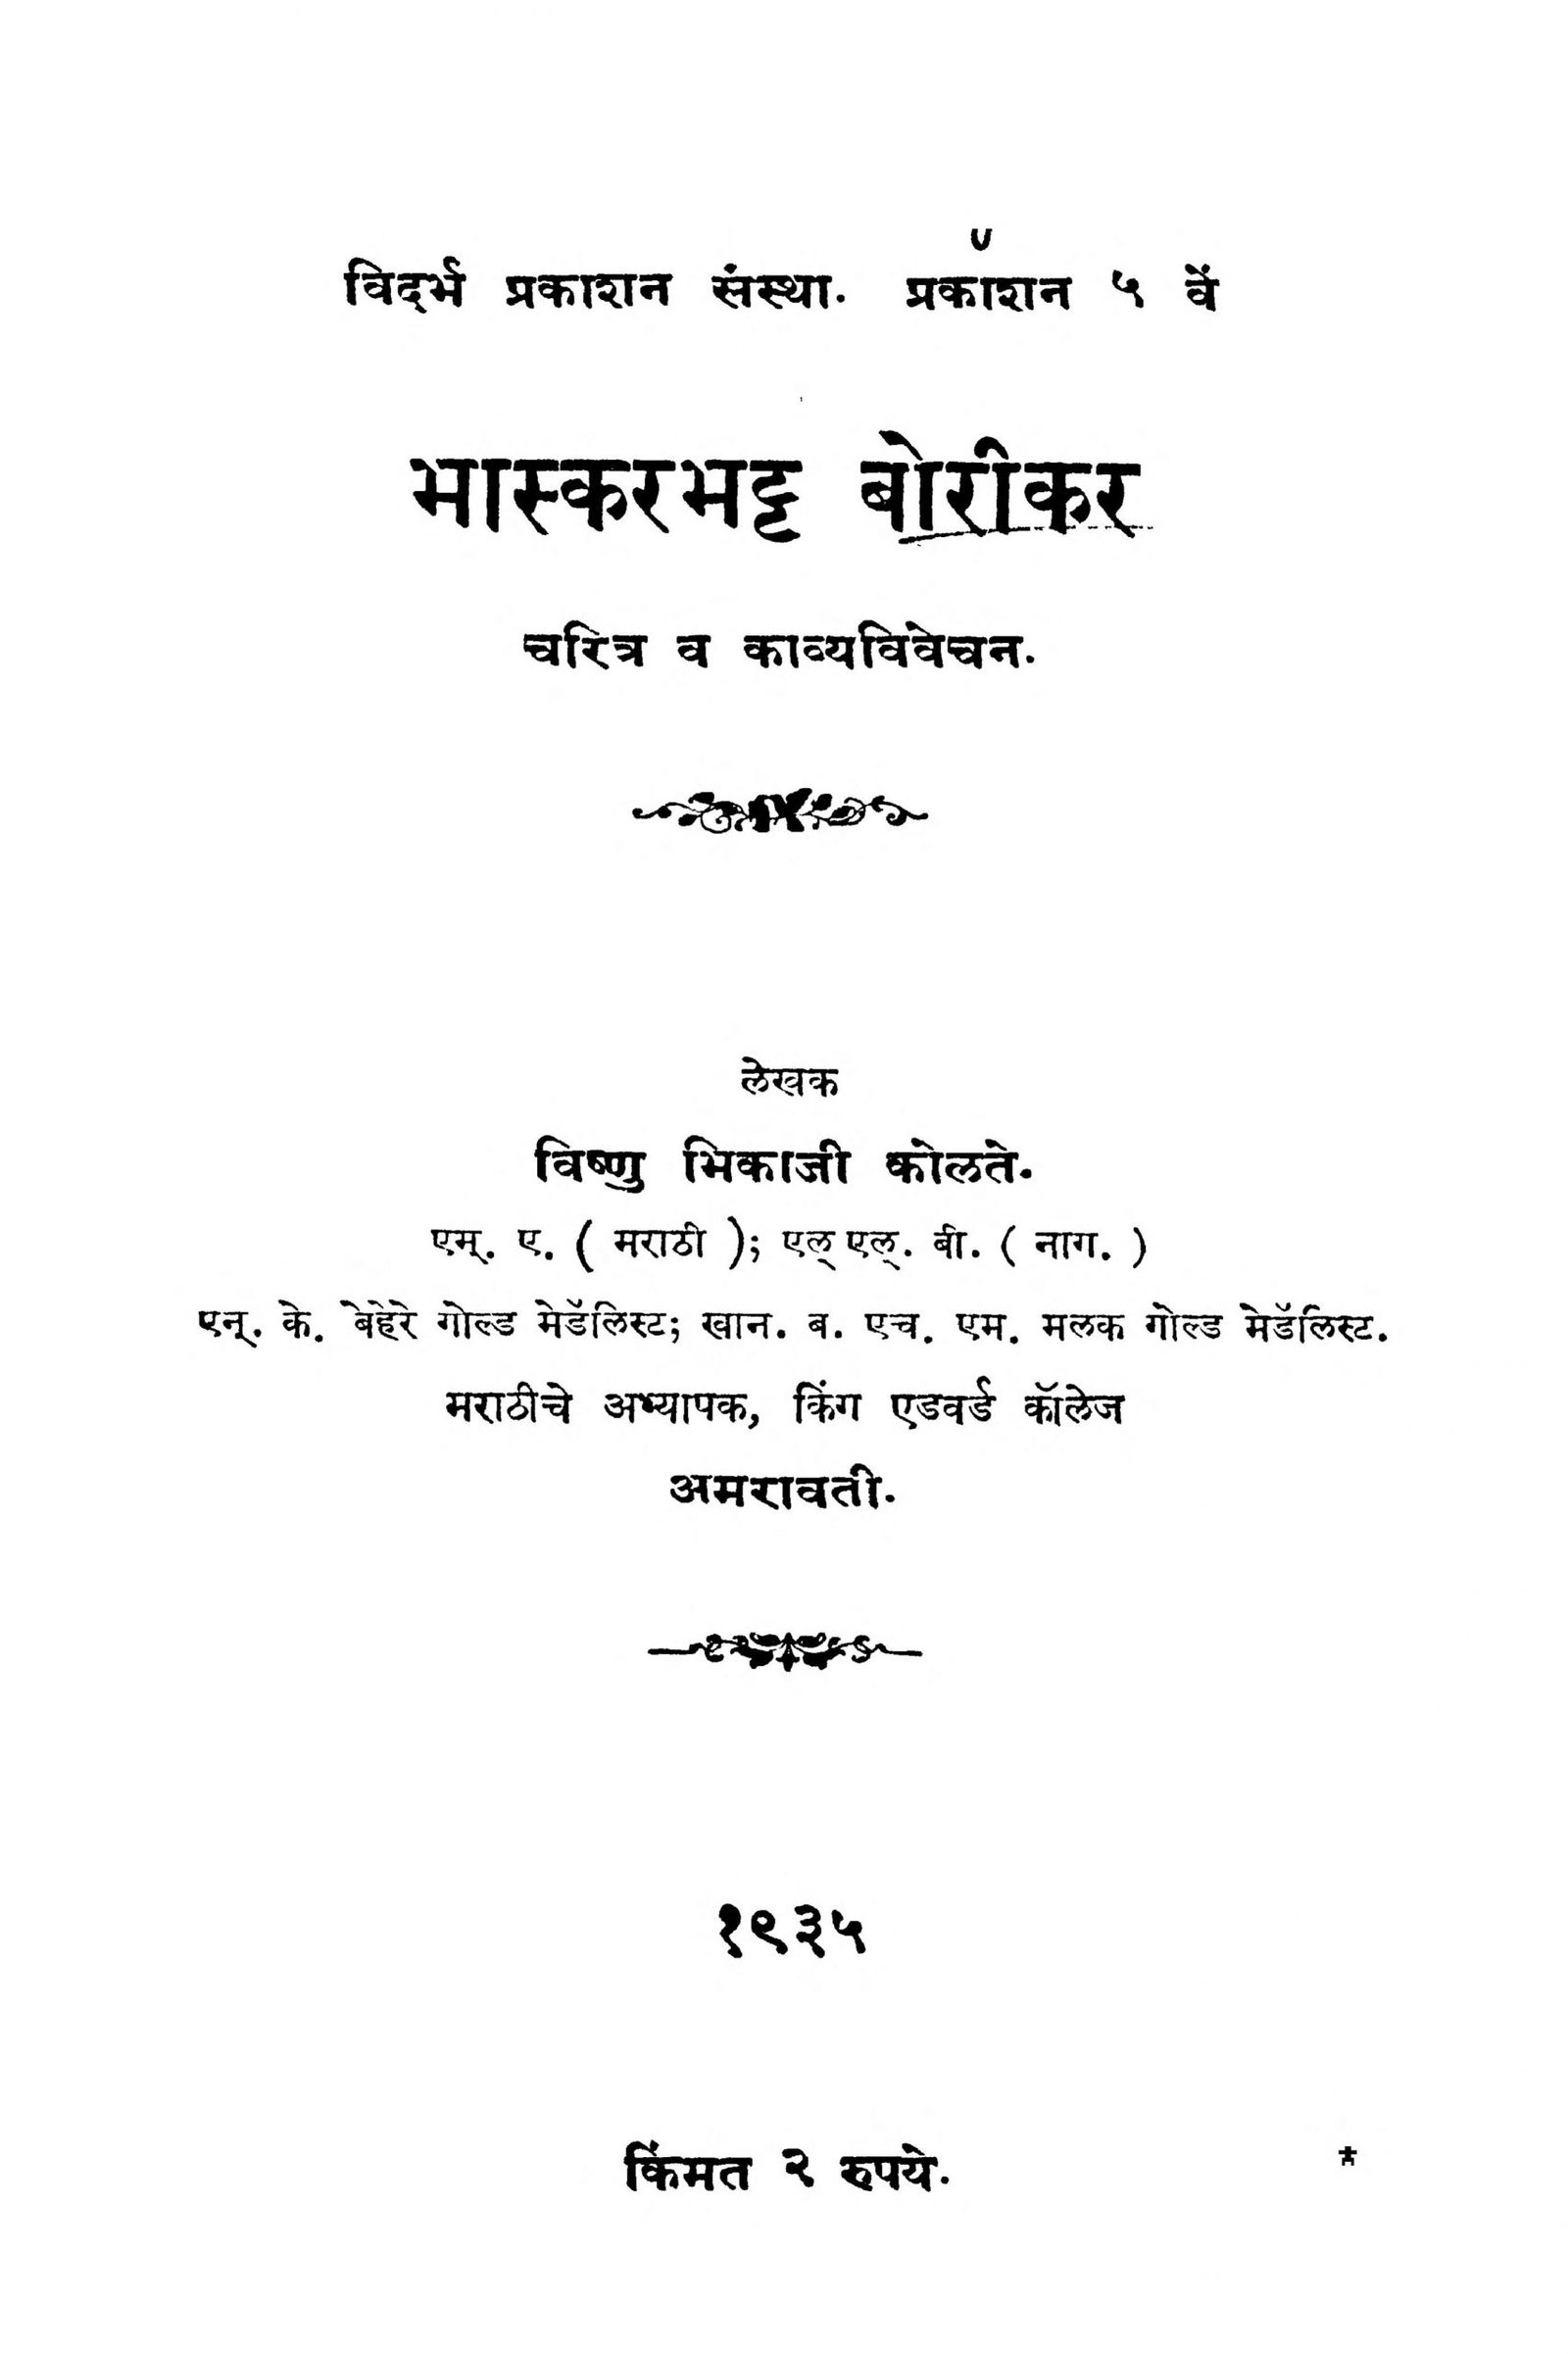 Bhaskar Bhat Borikar